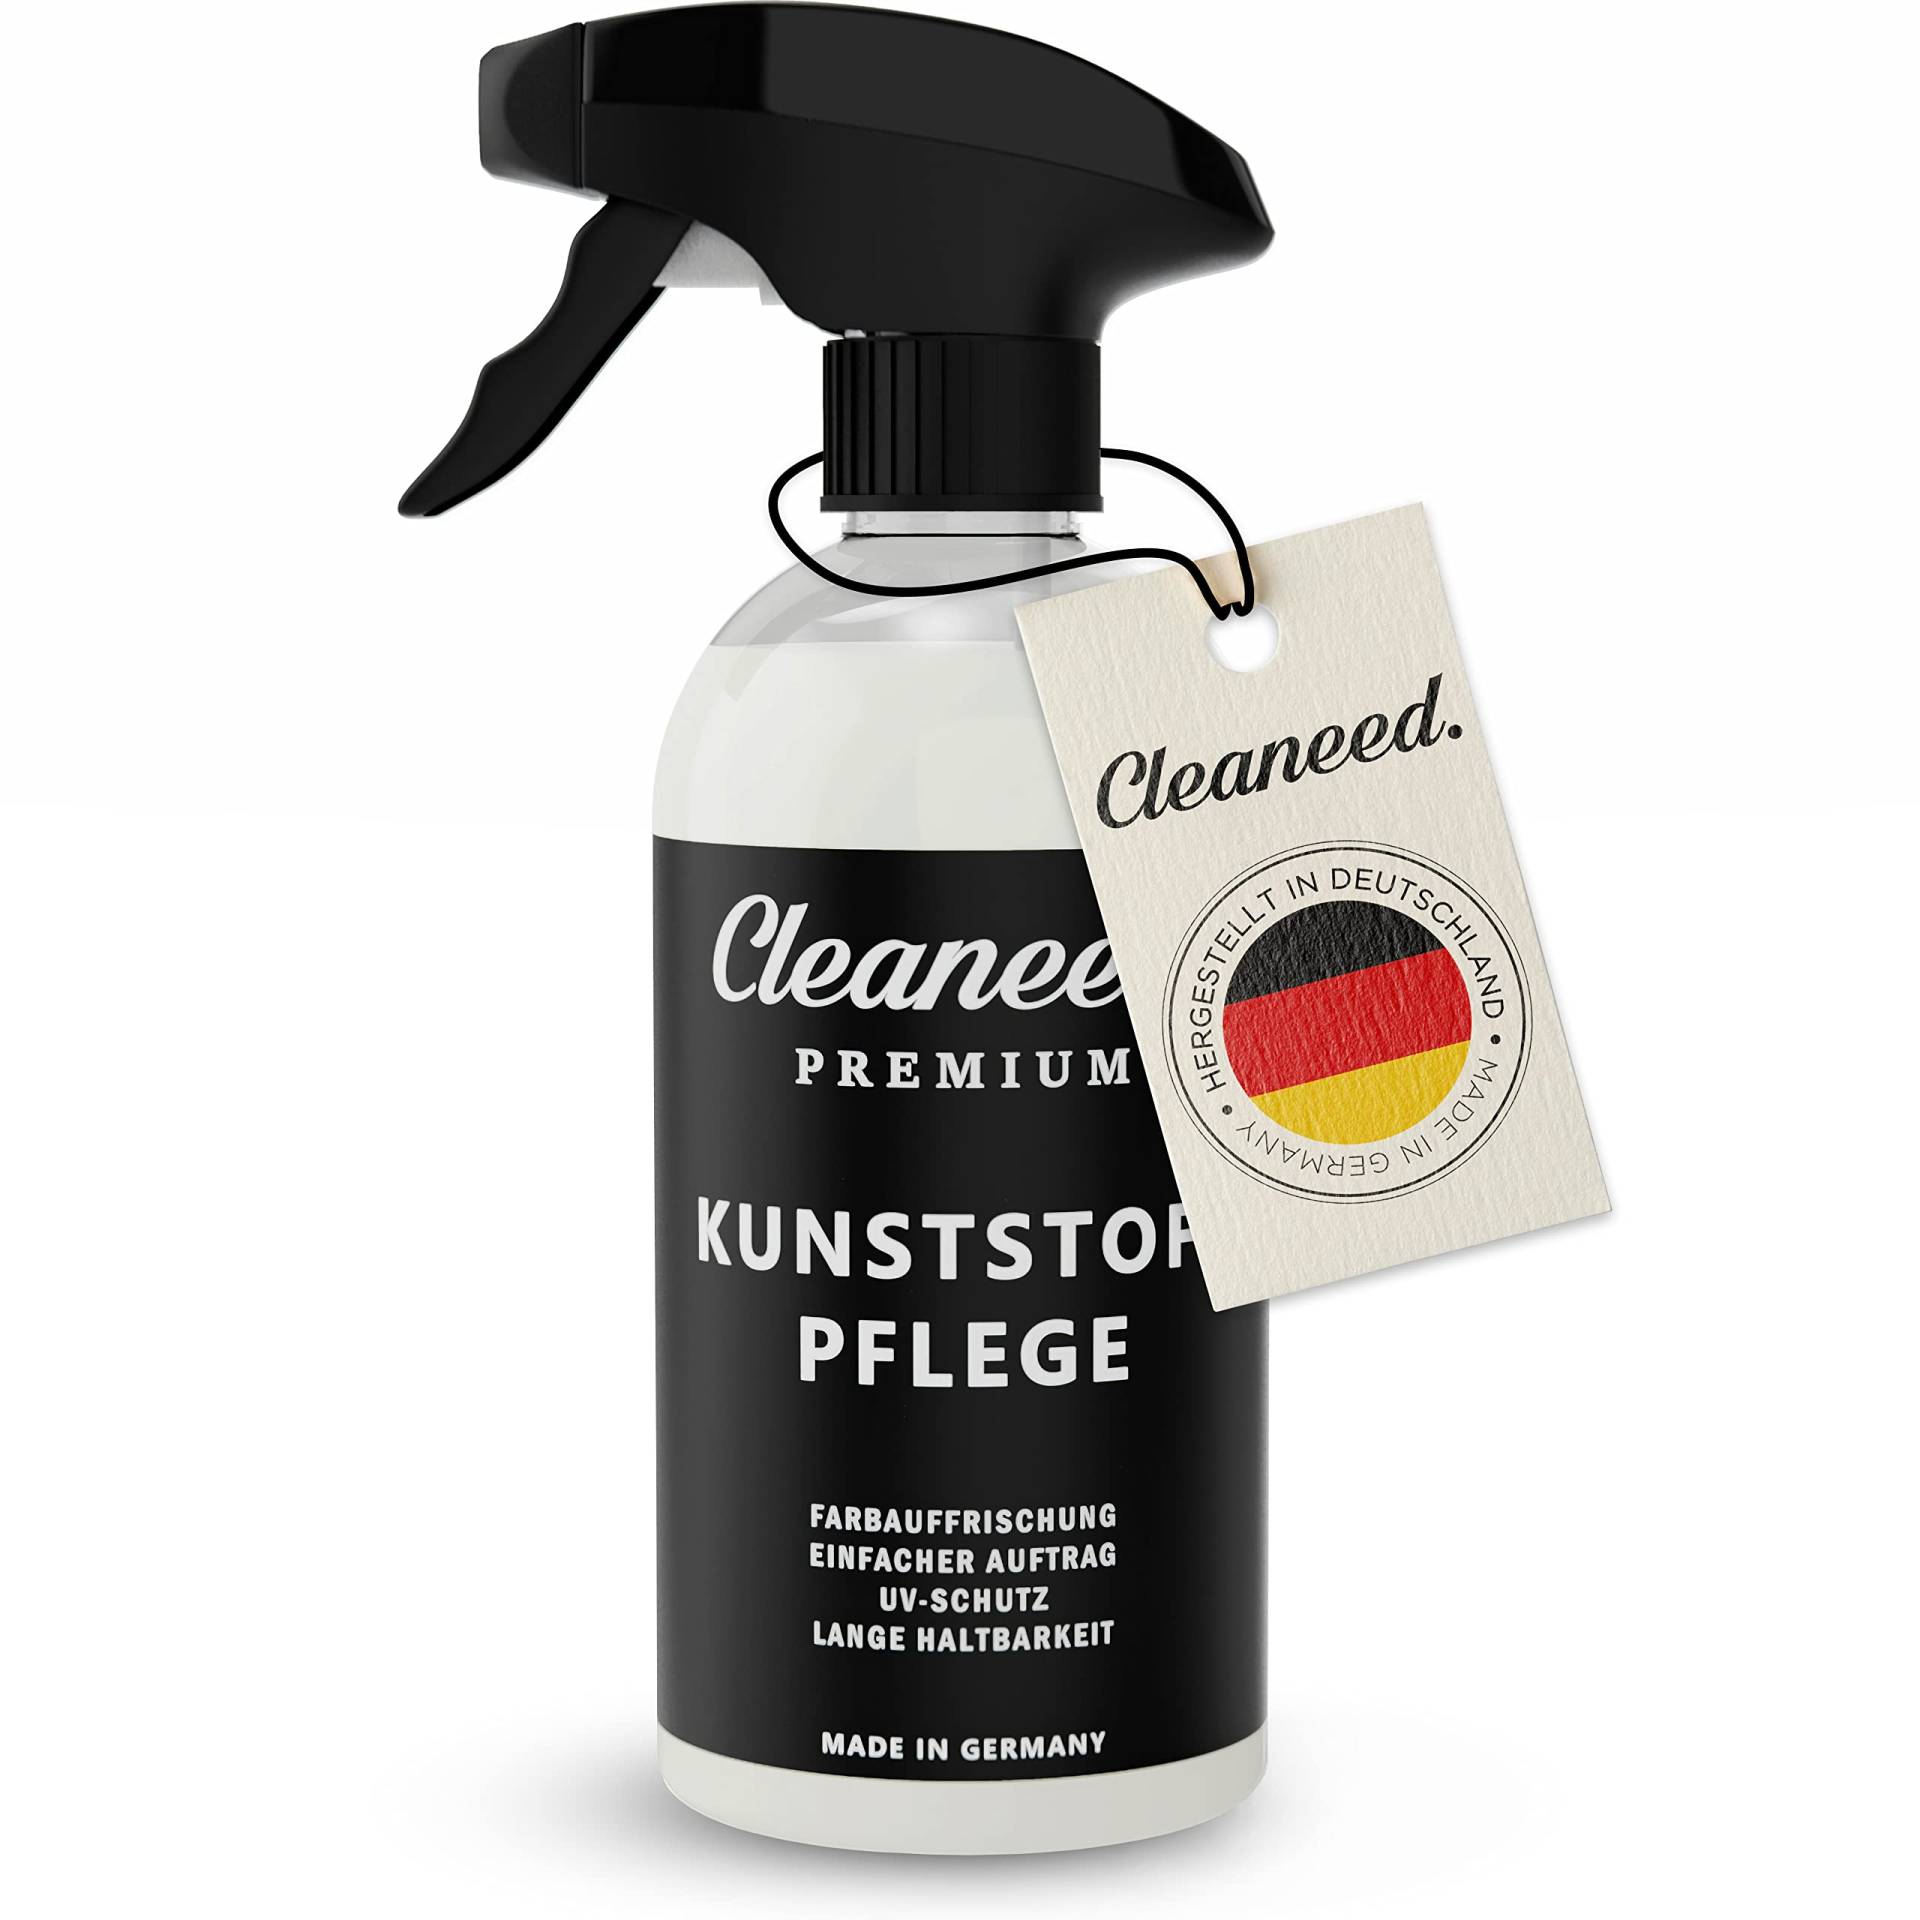 Cleaneed Premium Kunststoffpflege – Made in Germany – Farbauffrischung, UV-Schutz, Lange Haltbarkeit, Einfacher Auftrag, Matt - 500ml von Cleaneed